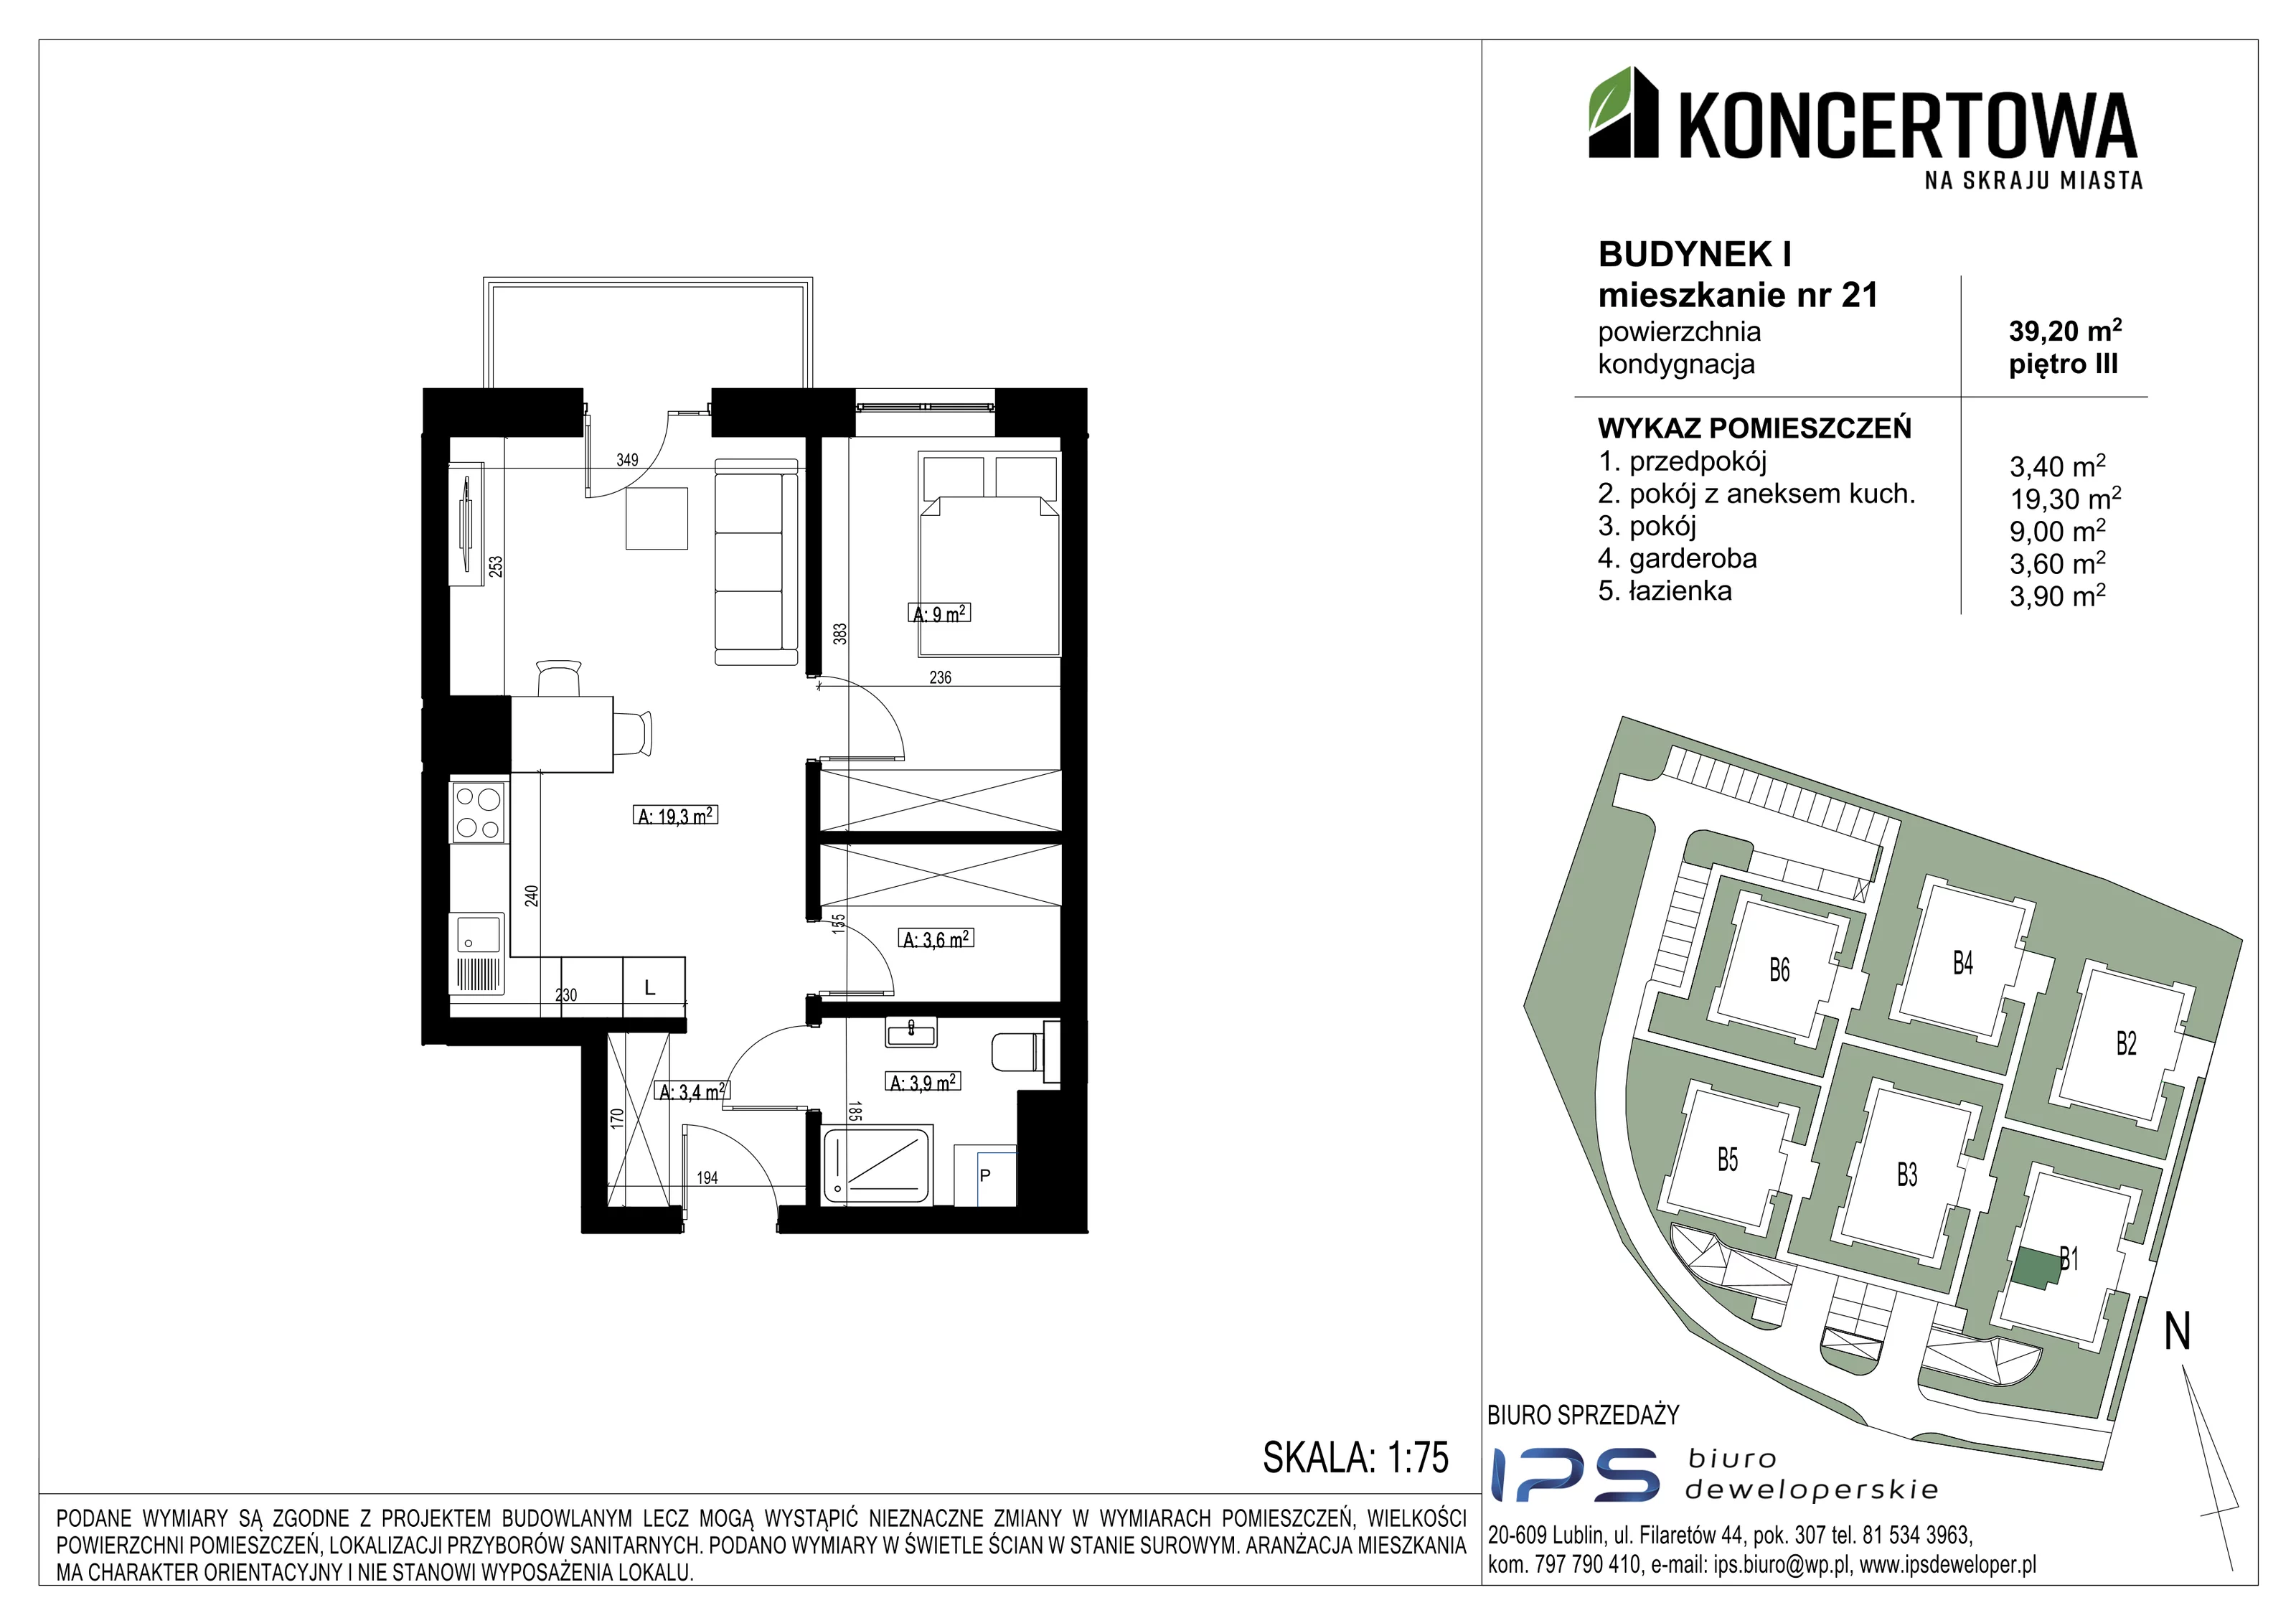 Mieszkanie 39,20 m², piętro 3, oferta nr 2_I/21, KONCERTOWA - Na skraju miasta, Lublin, Czechów Północny, Czechów Północny,  ul. Koncertowa